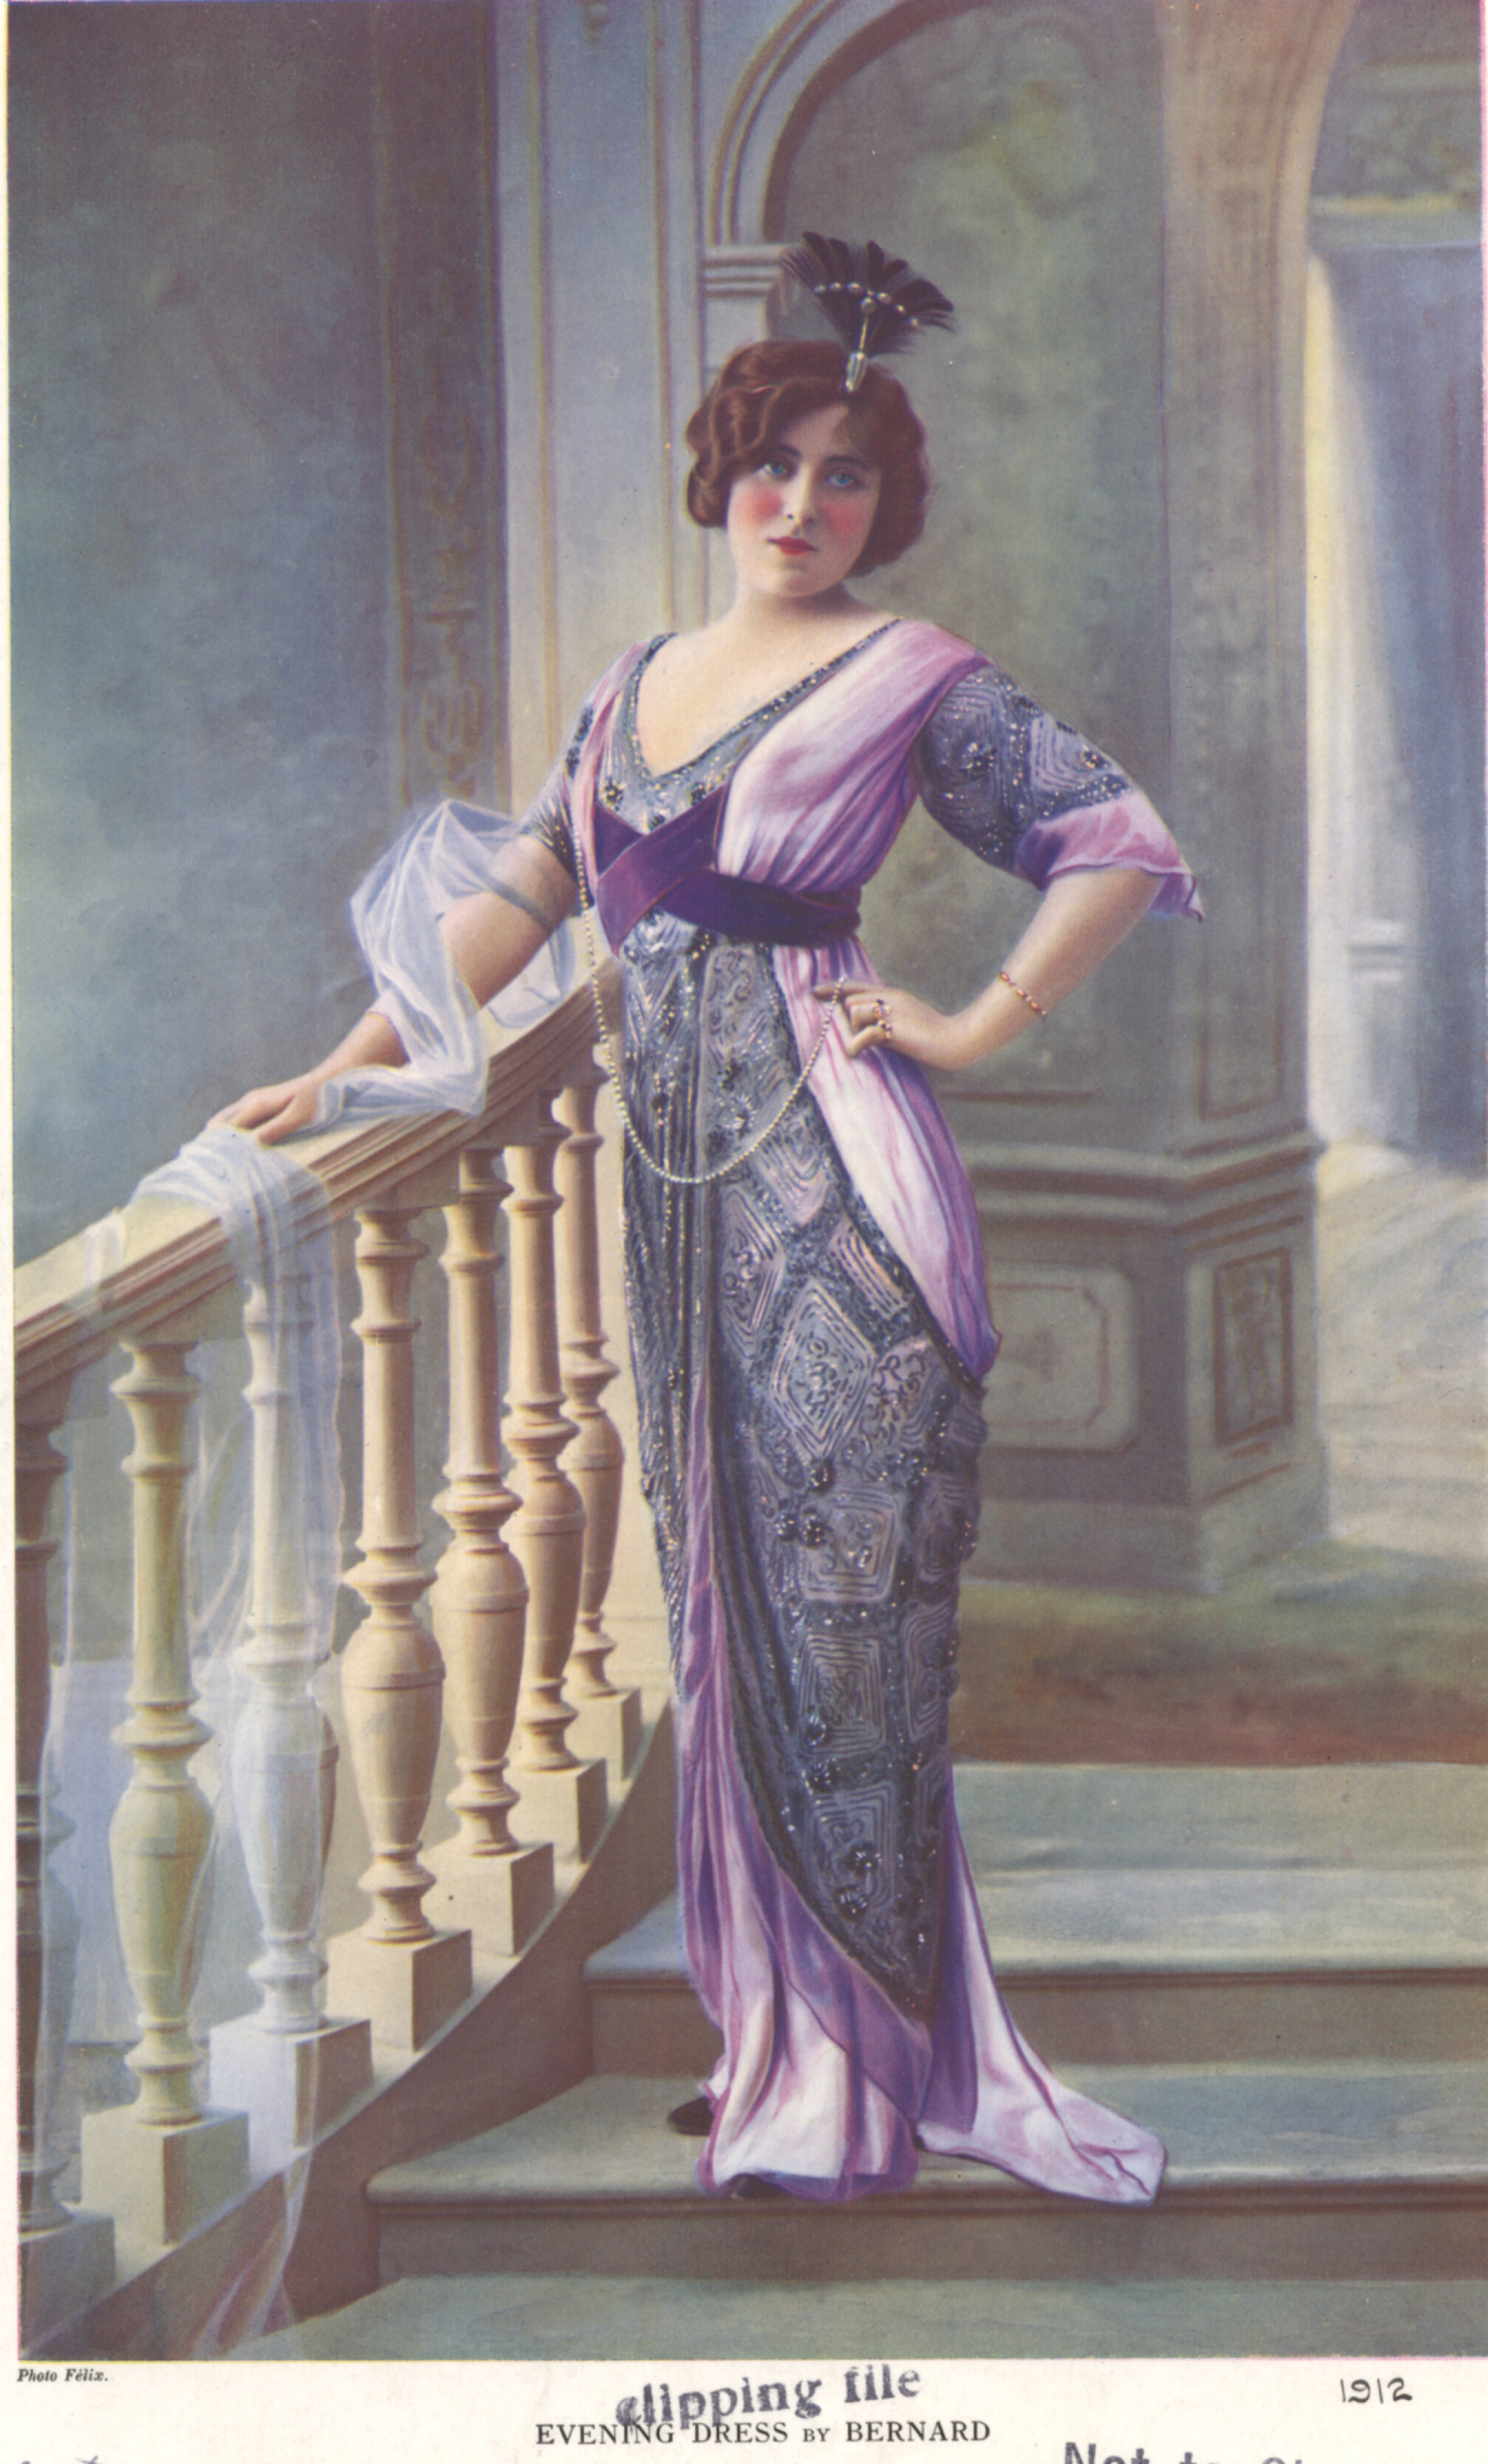 Edwardian Fashion, Clothing & Costumes 1900 - 1910s